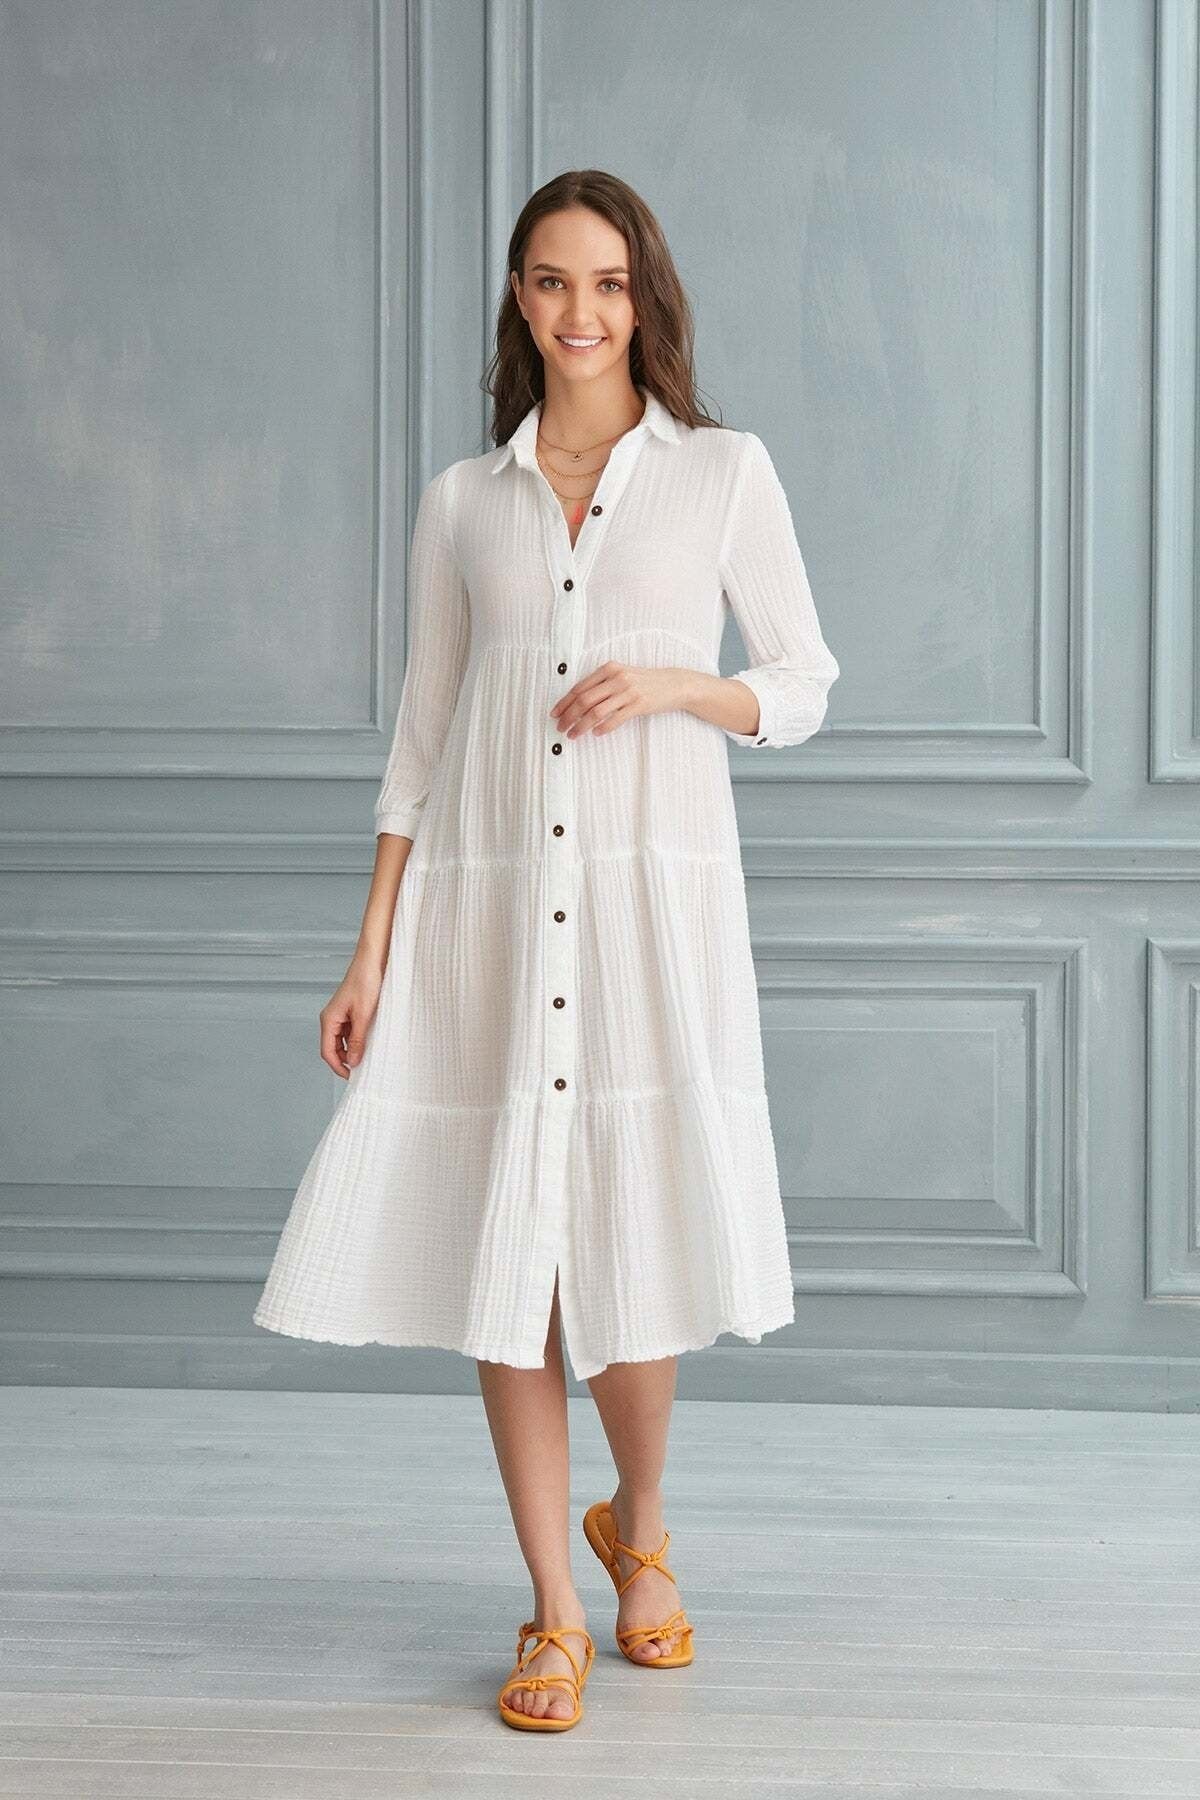 Begonville Maya Uzun Gömlek Elbise %100 Pamuk Müslin - Beyaz